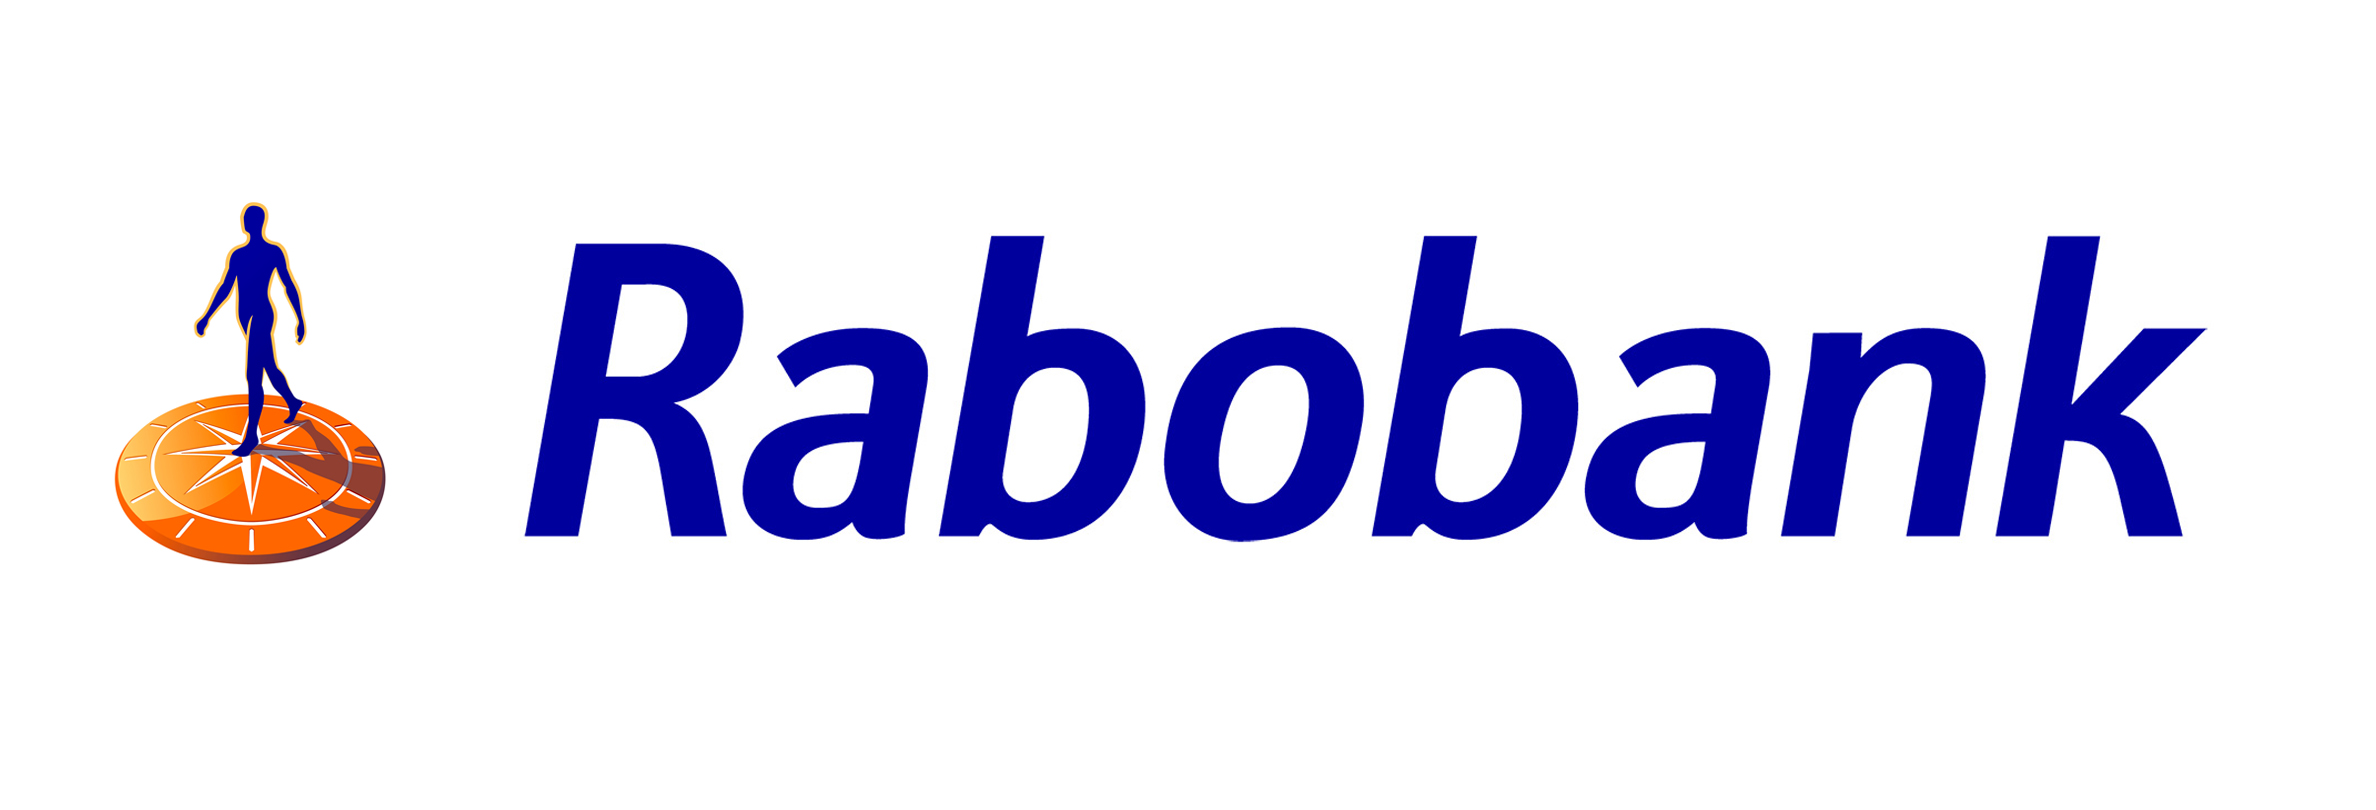 Robobank Logo Wallpaper